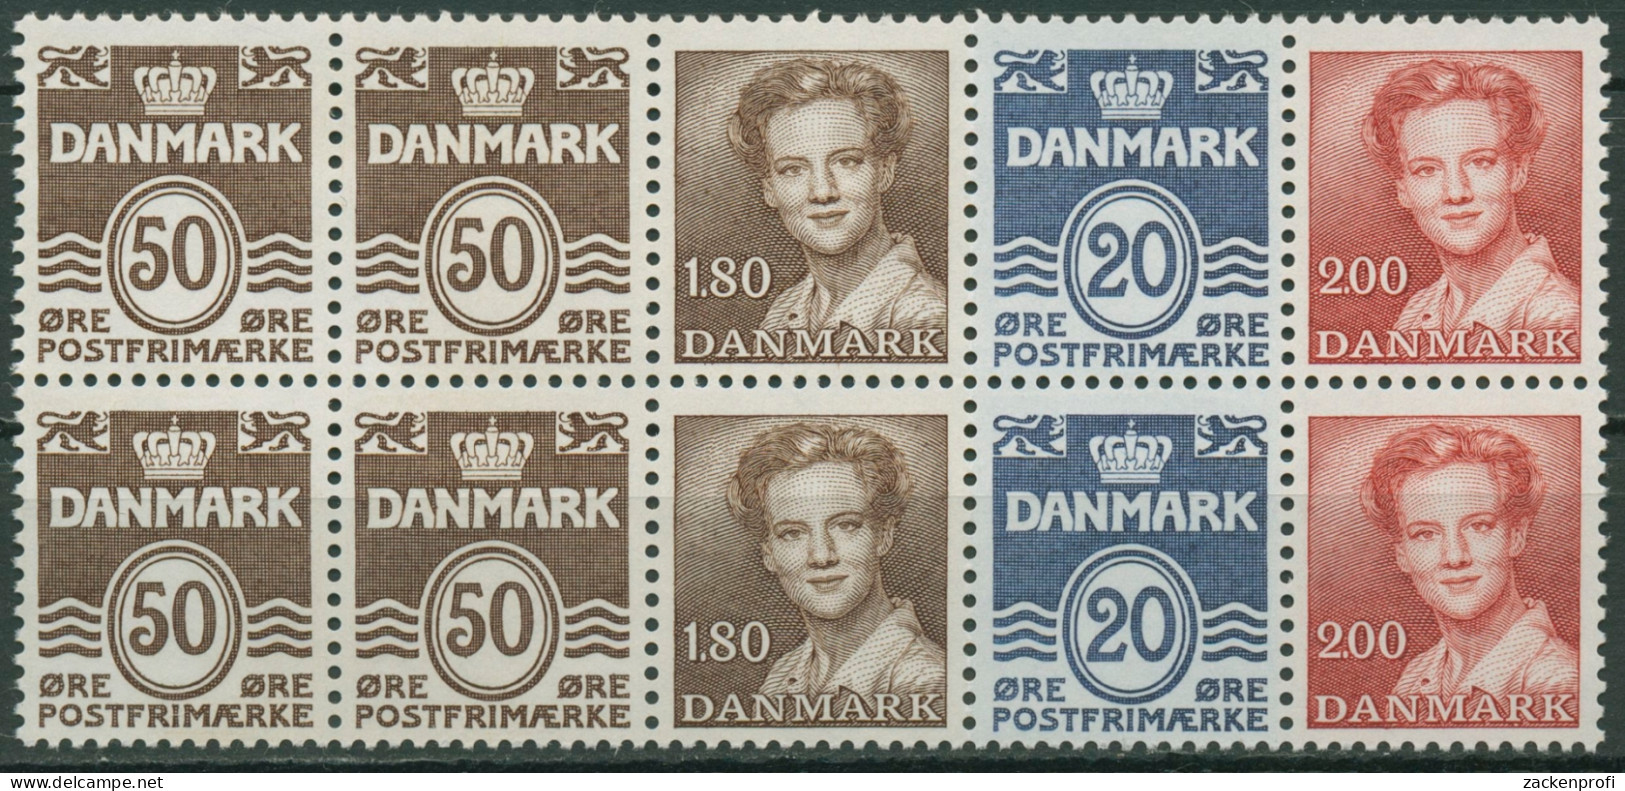 Dänemark 1974 Markenheftchenblatt H-Bl. 19 Postfrisch (C96552) - Libretti